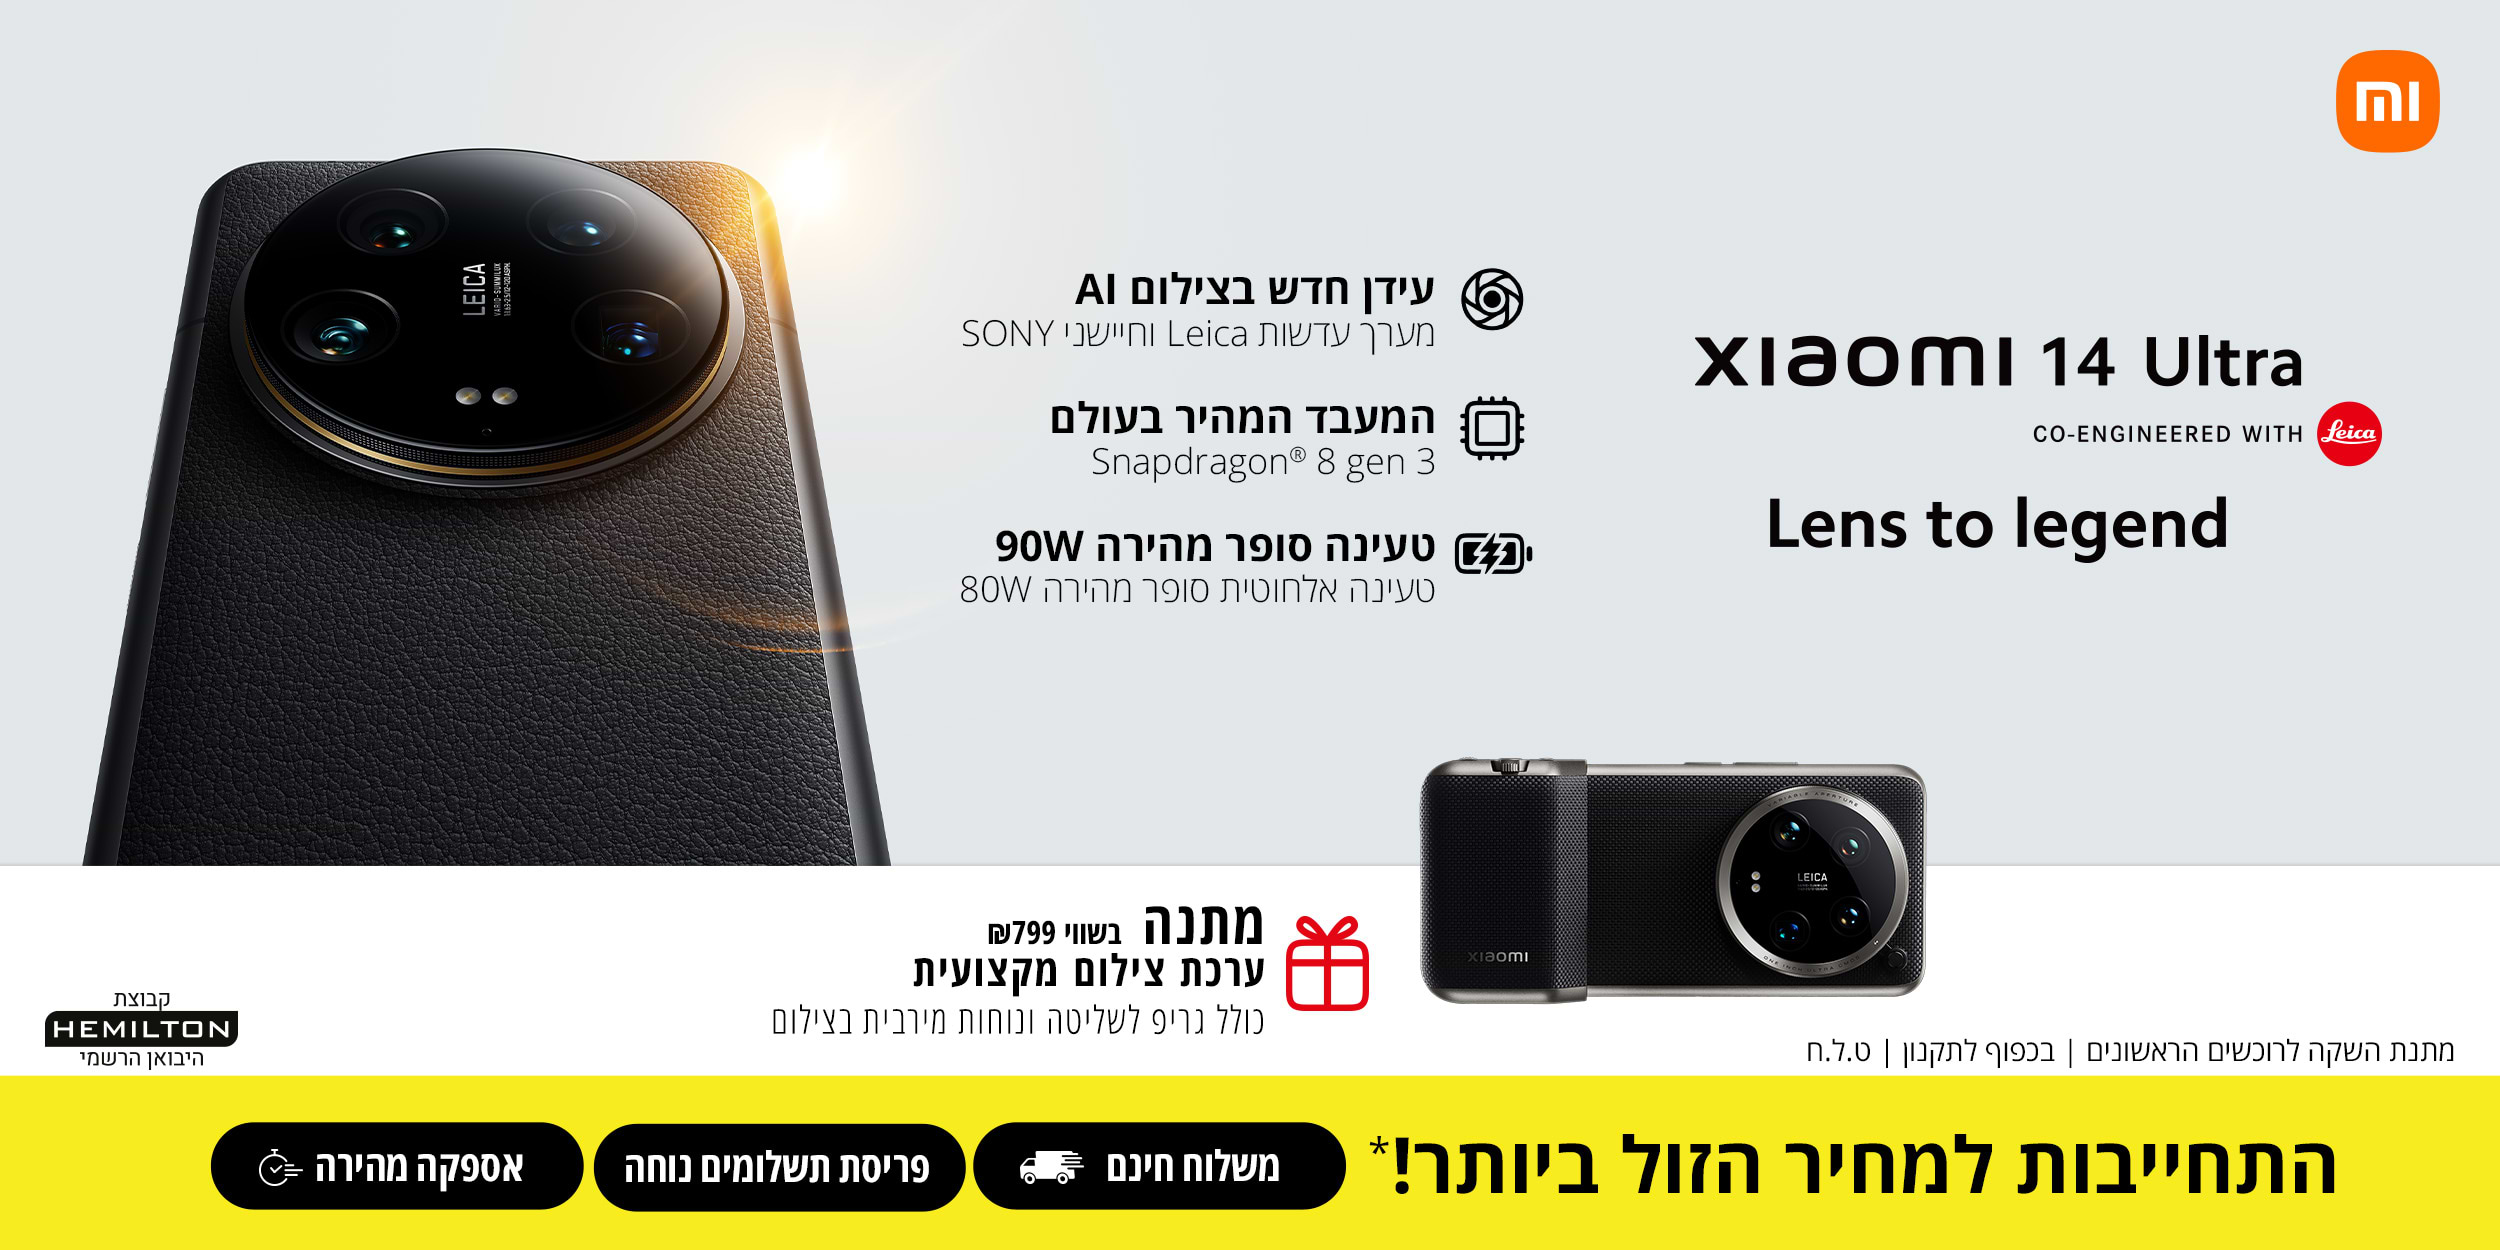 xiaomi 14 Ultra Lens to legend עידן חדש בצילום AI מערך עדשות Leica וחיישני SONY . המעבד המהיר בעולם Snapdragon 8 gen 3 . טעינה סופר מהירה 90W טעינה אלחוטית סופר מהירה 80W . מתנה בשווי 799 ש